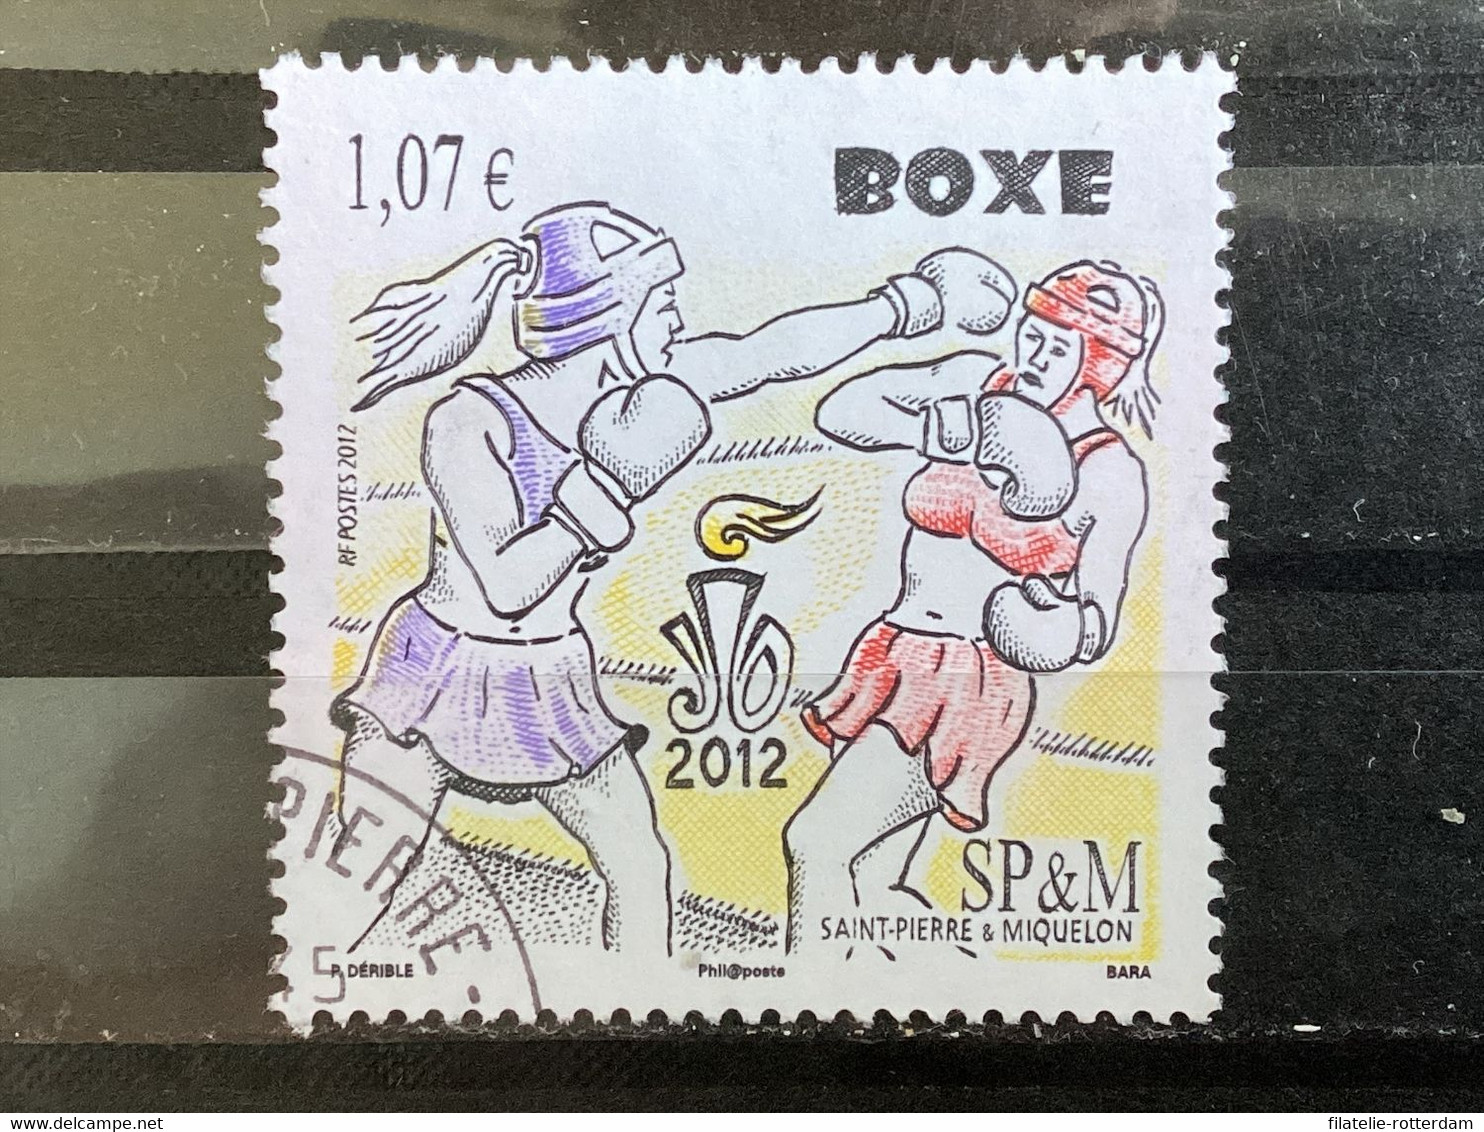 St. Pierre & Miquelon - Boxen (1.07) 2012 - Used Stamps